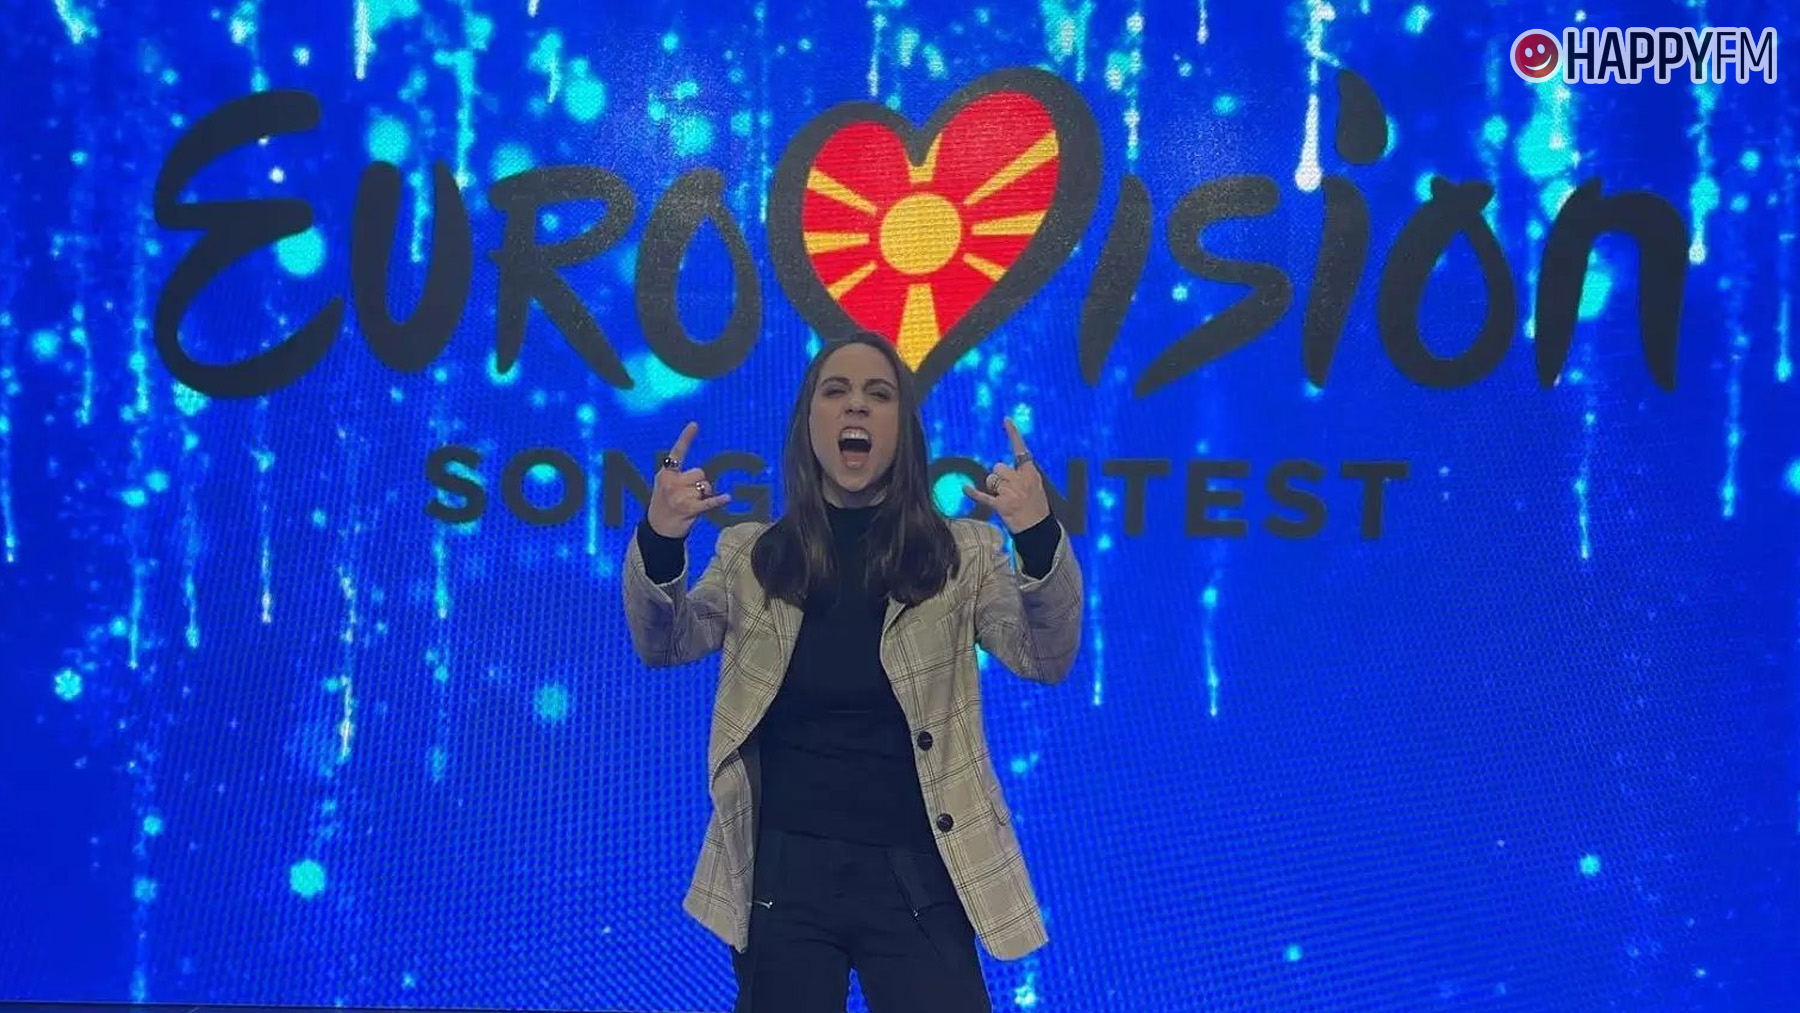 Andrea, representante de Macedonia del Norte en Eurovisión 2022.